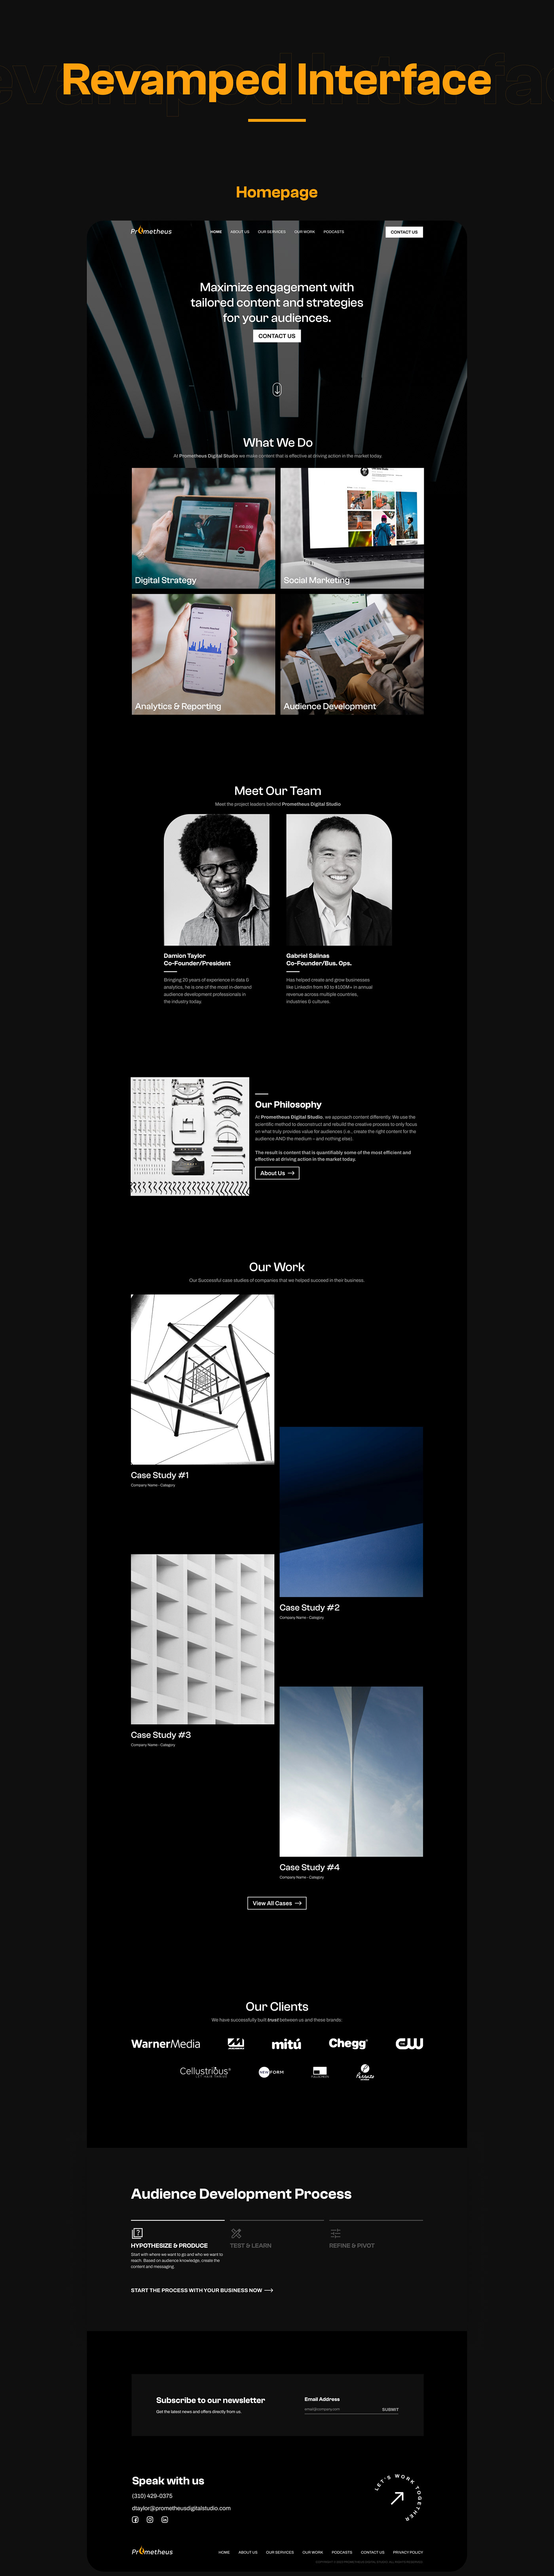 landing page UI ui design UI/UX user interface ux UX design Website Website Design